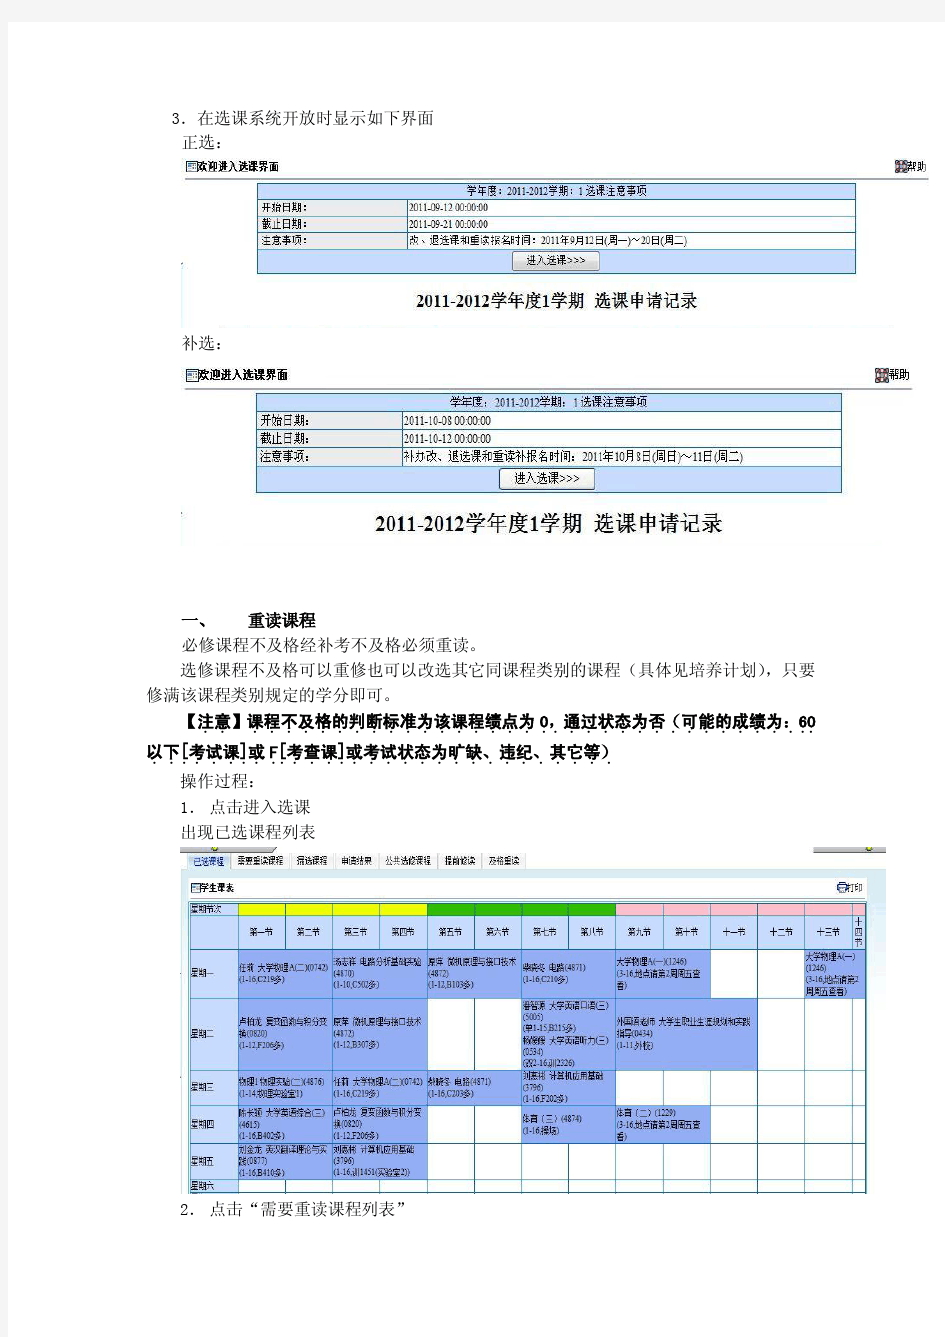 上海工程技术大学选课手册V2.0